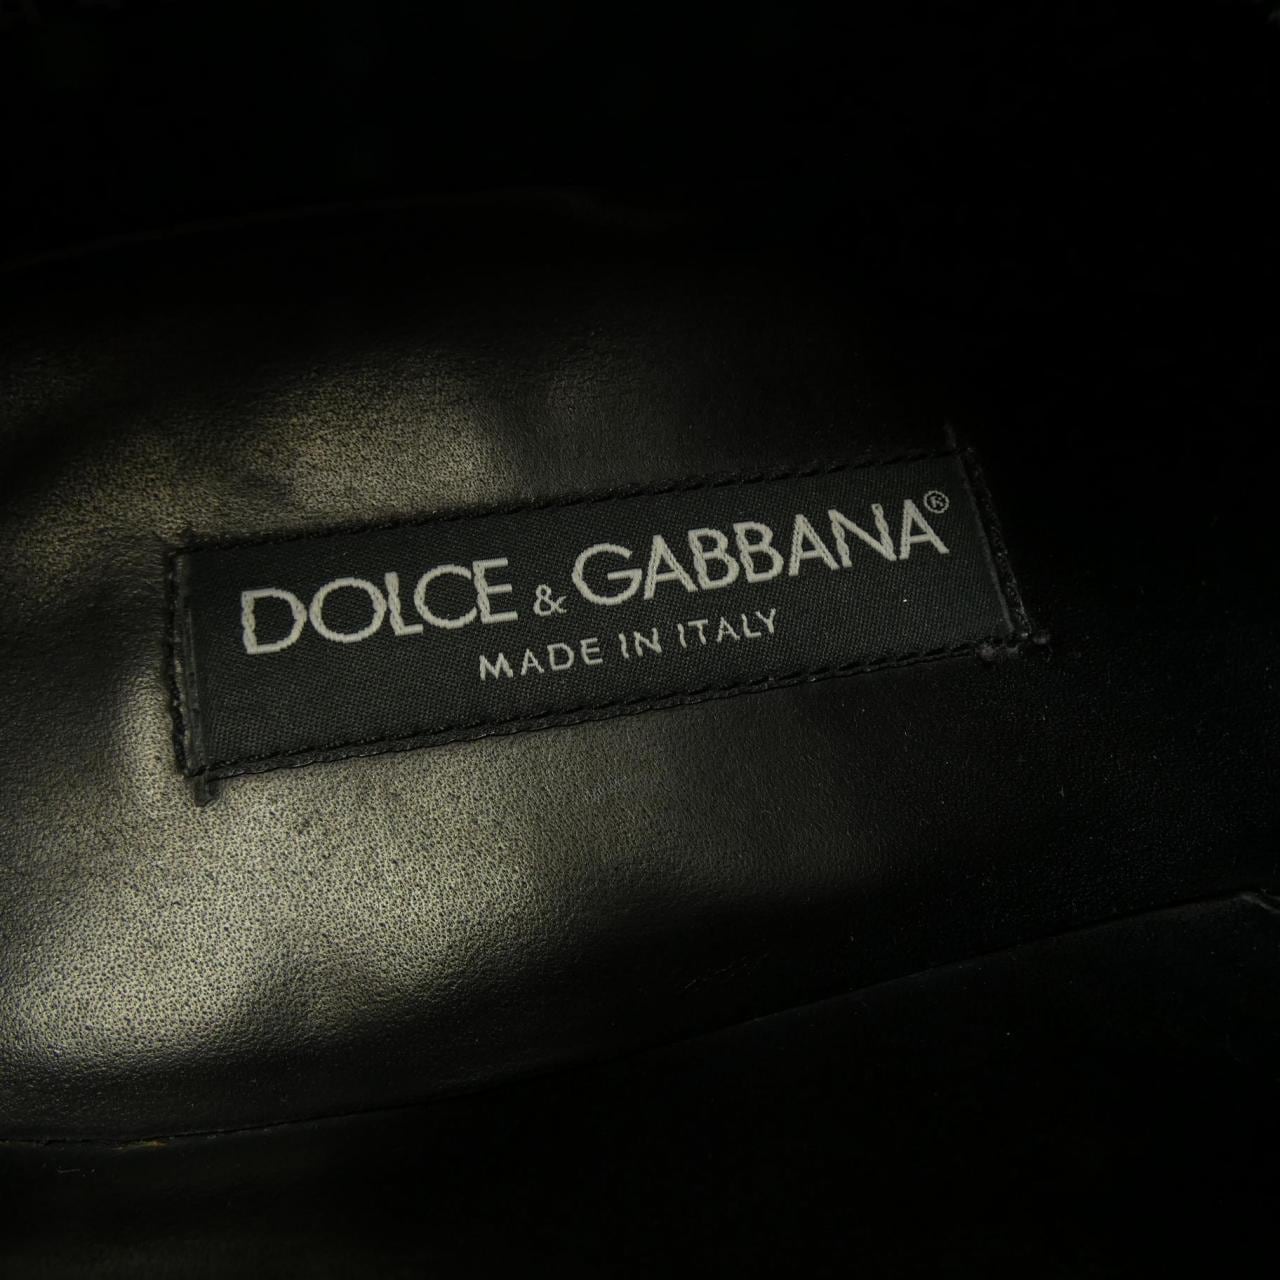 DOLCE&GABBANA DOLCE & GABBANA Dress Shoes